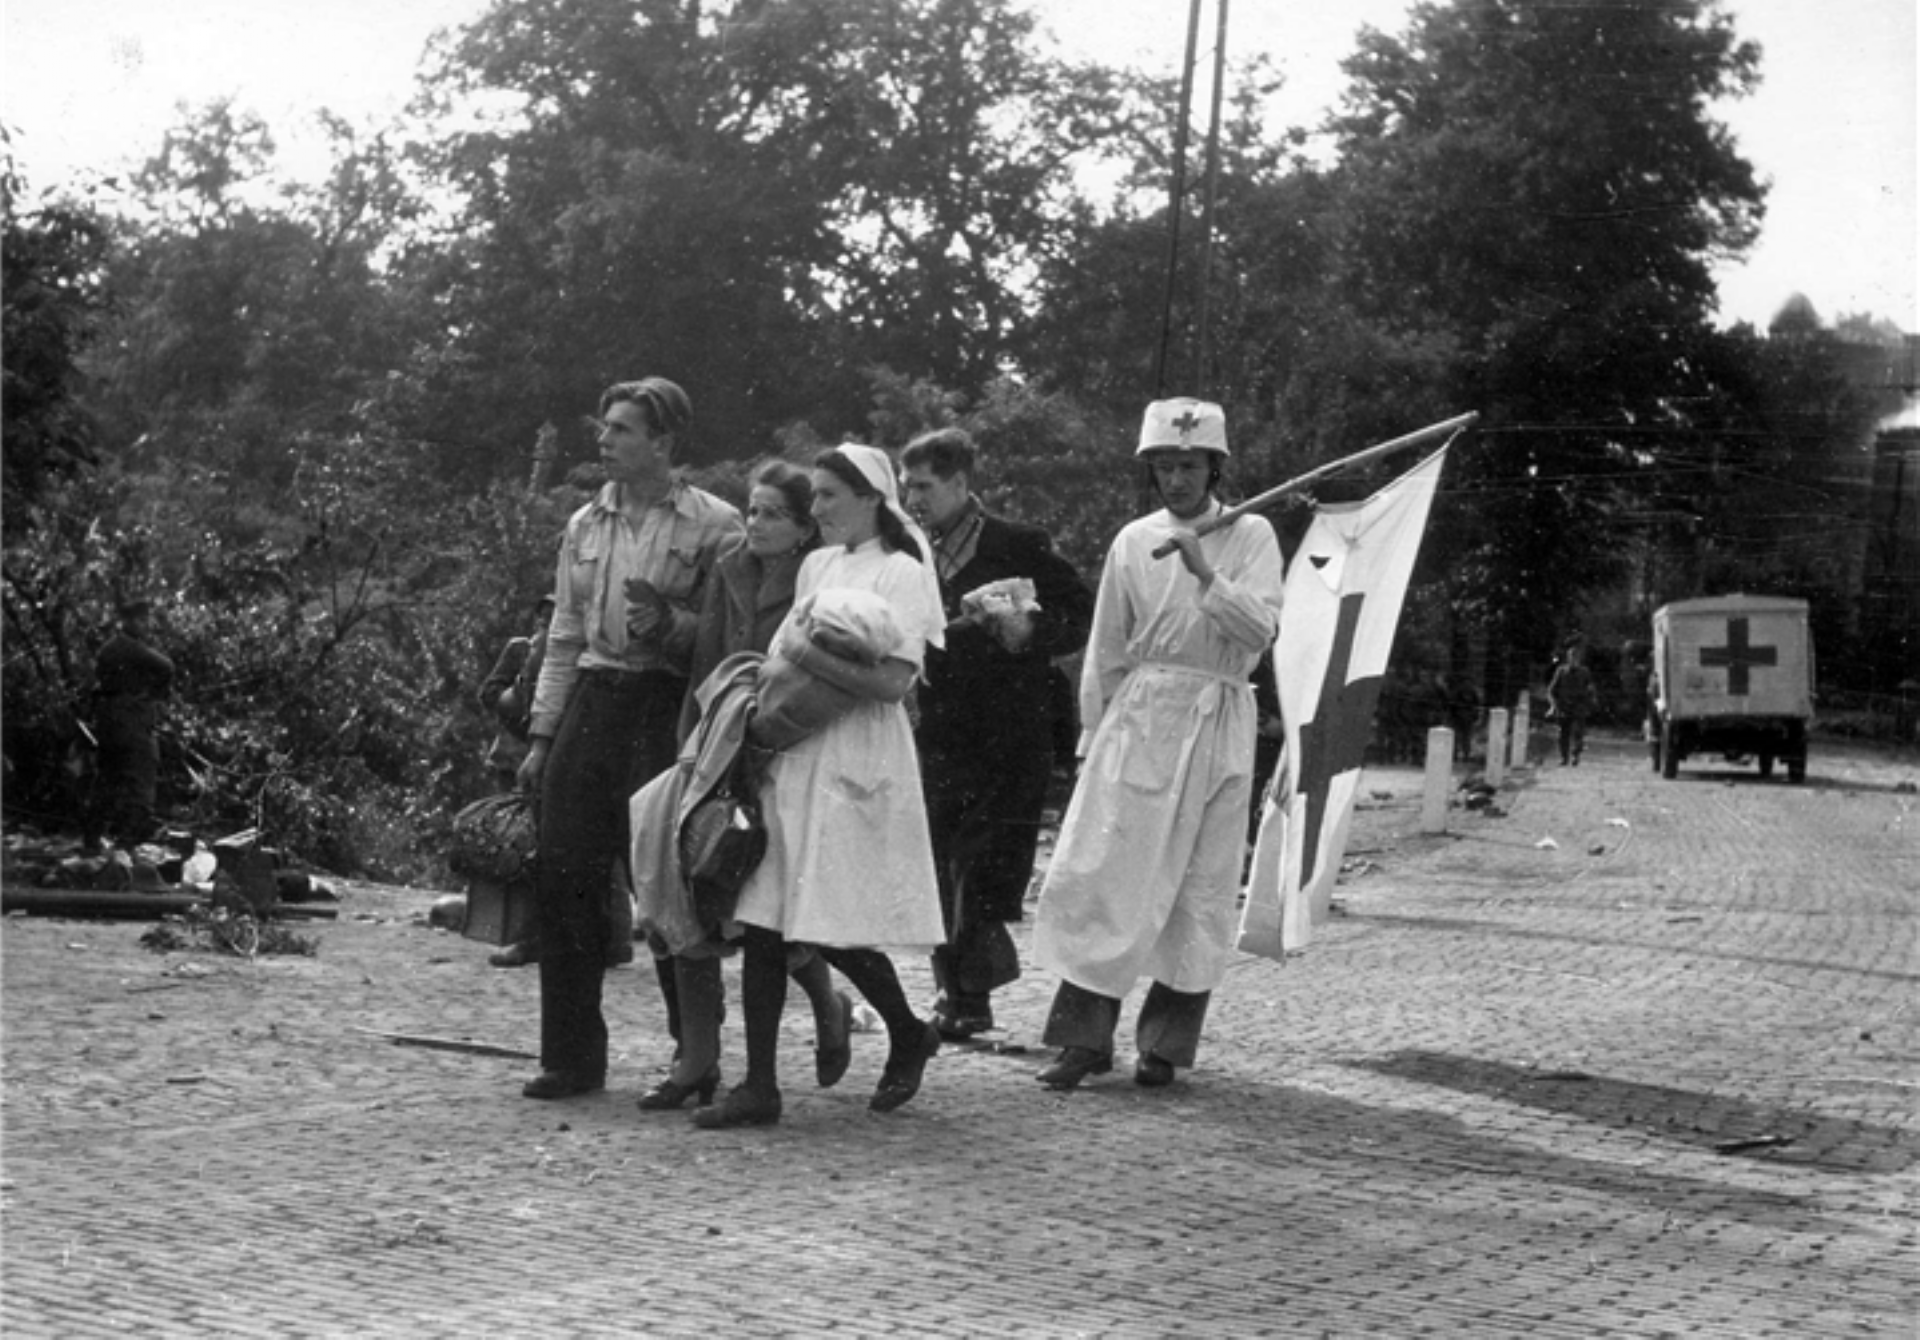 Tijdens de Slag om Arnhem vluchtten veel inwoners. Op de foto staan patinten en verpleegkundigen die de stad verlaten. 310 volwassenen en 40 kinderen komen lopend of per kar naar het Krller-Mller Museum en worden daar opgevangen.